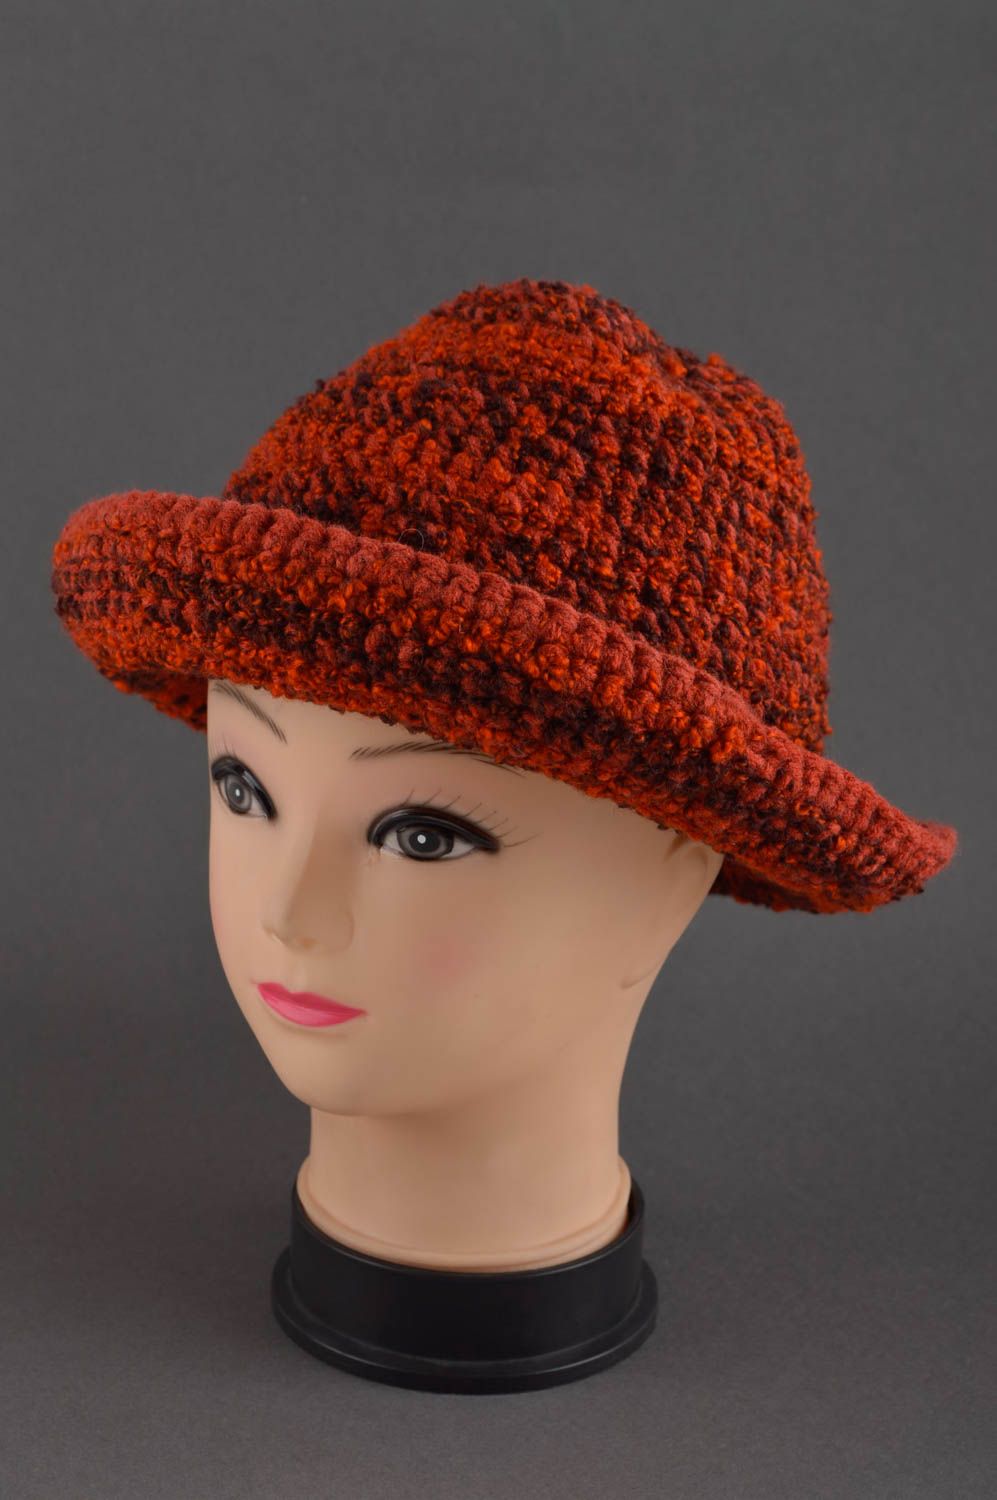 Handmade gehäkelter Hut Damen Accessoire modischer Hut aus Boucle schön foto 1